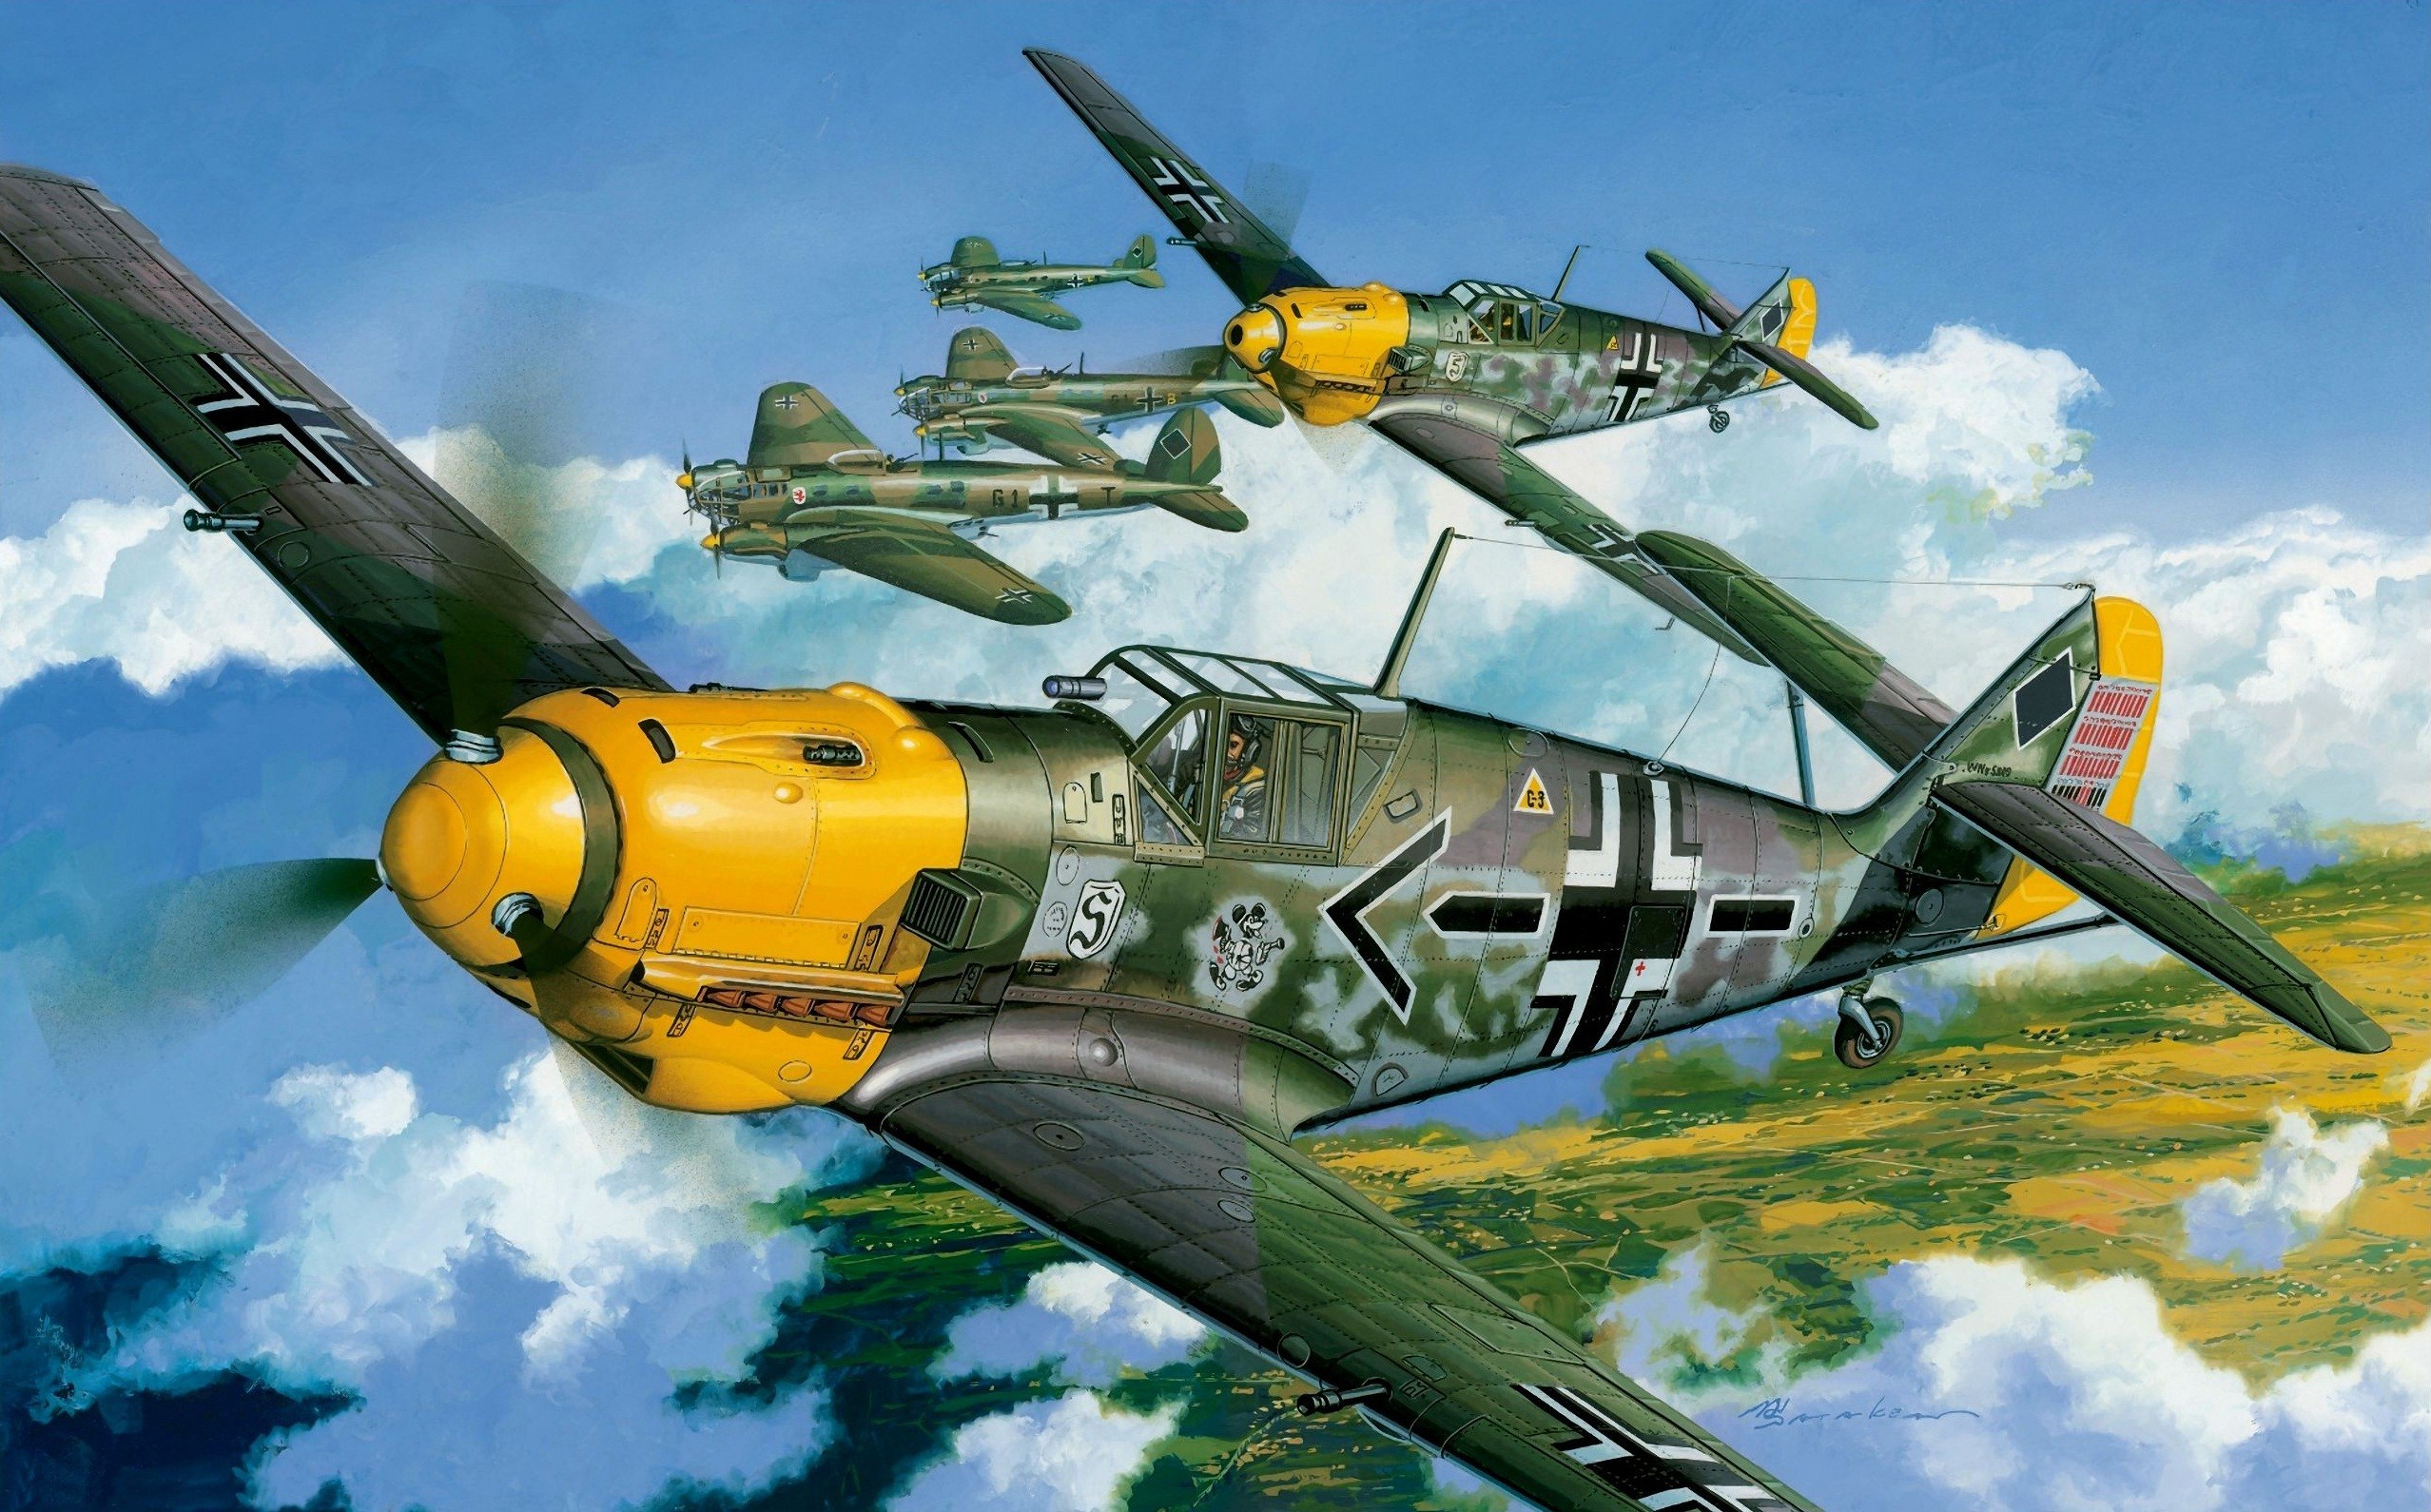 2556x1590 Messerschmitt, Messerschmitt Bf 109, Luftwaffe, Aircraft, Military,  Artwork, Military Aircraft, World War II, Germany Wallpapers HD / Desktop  and Mobile ...